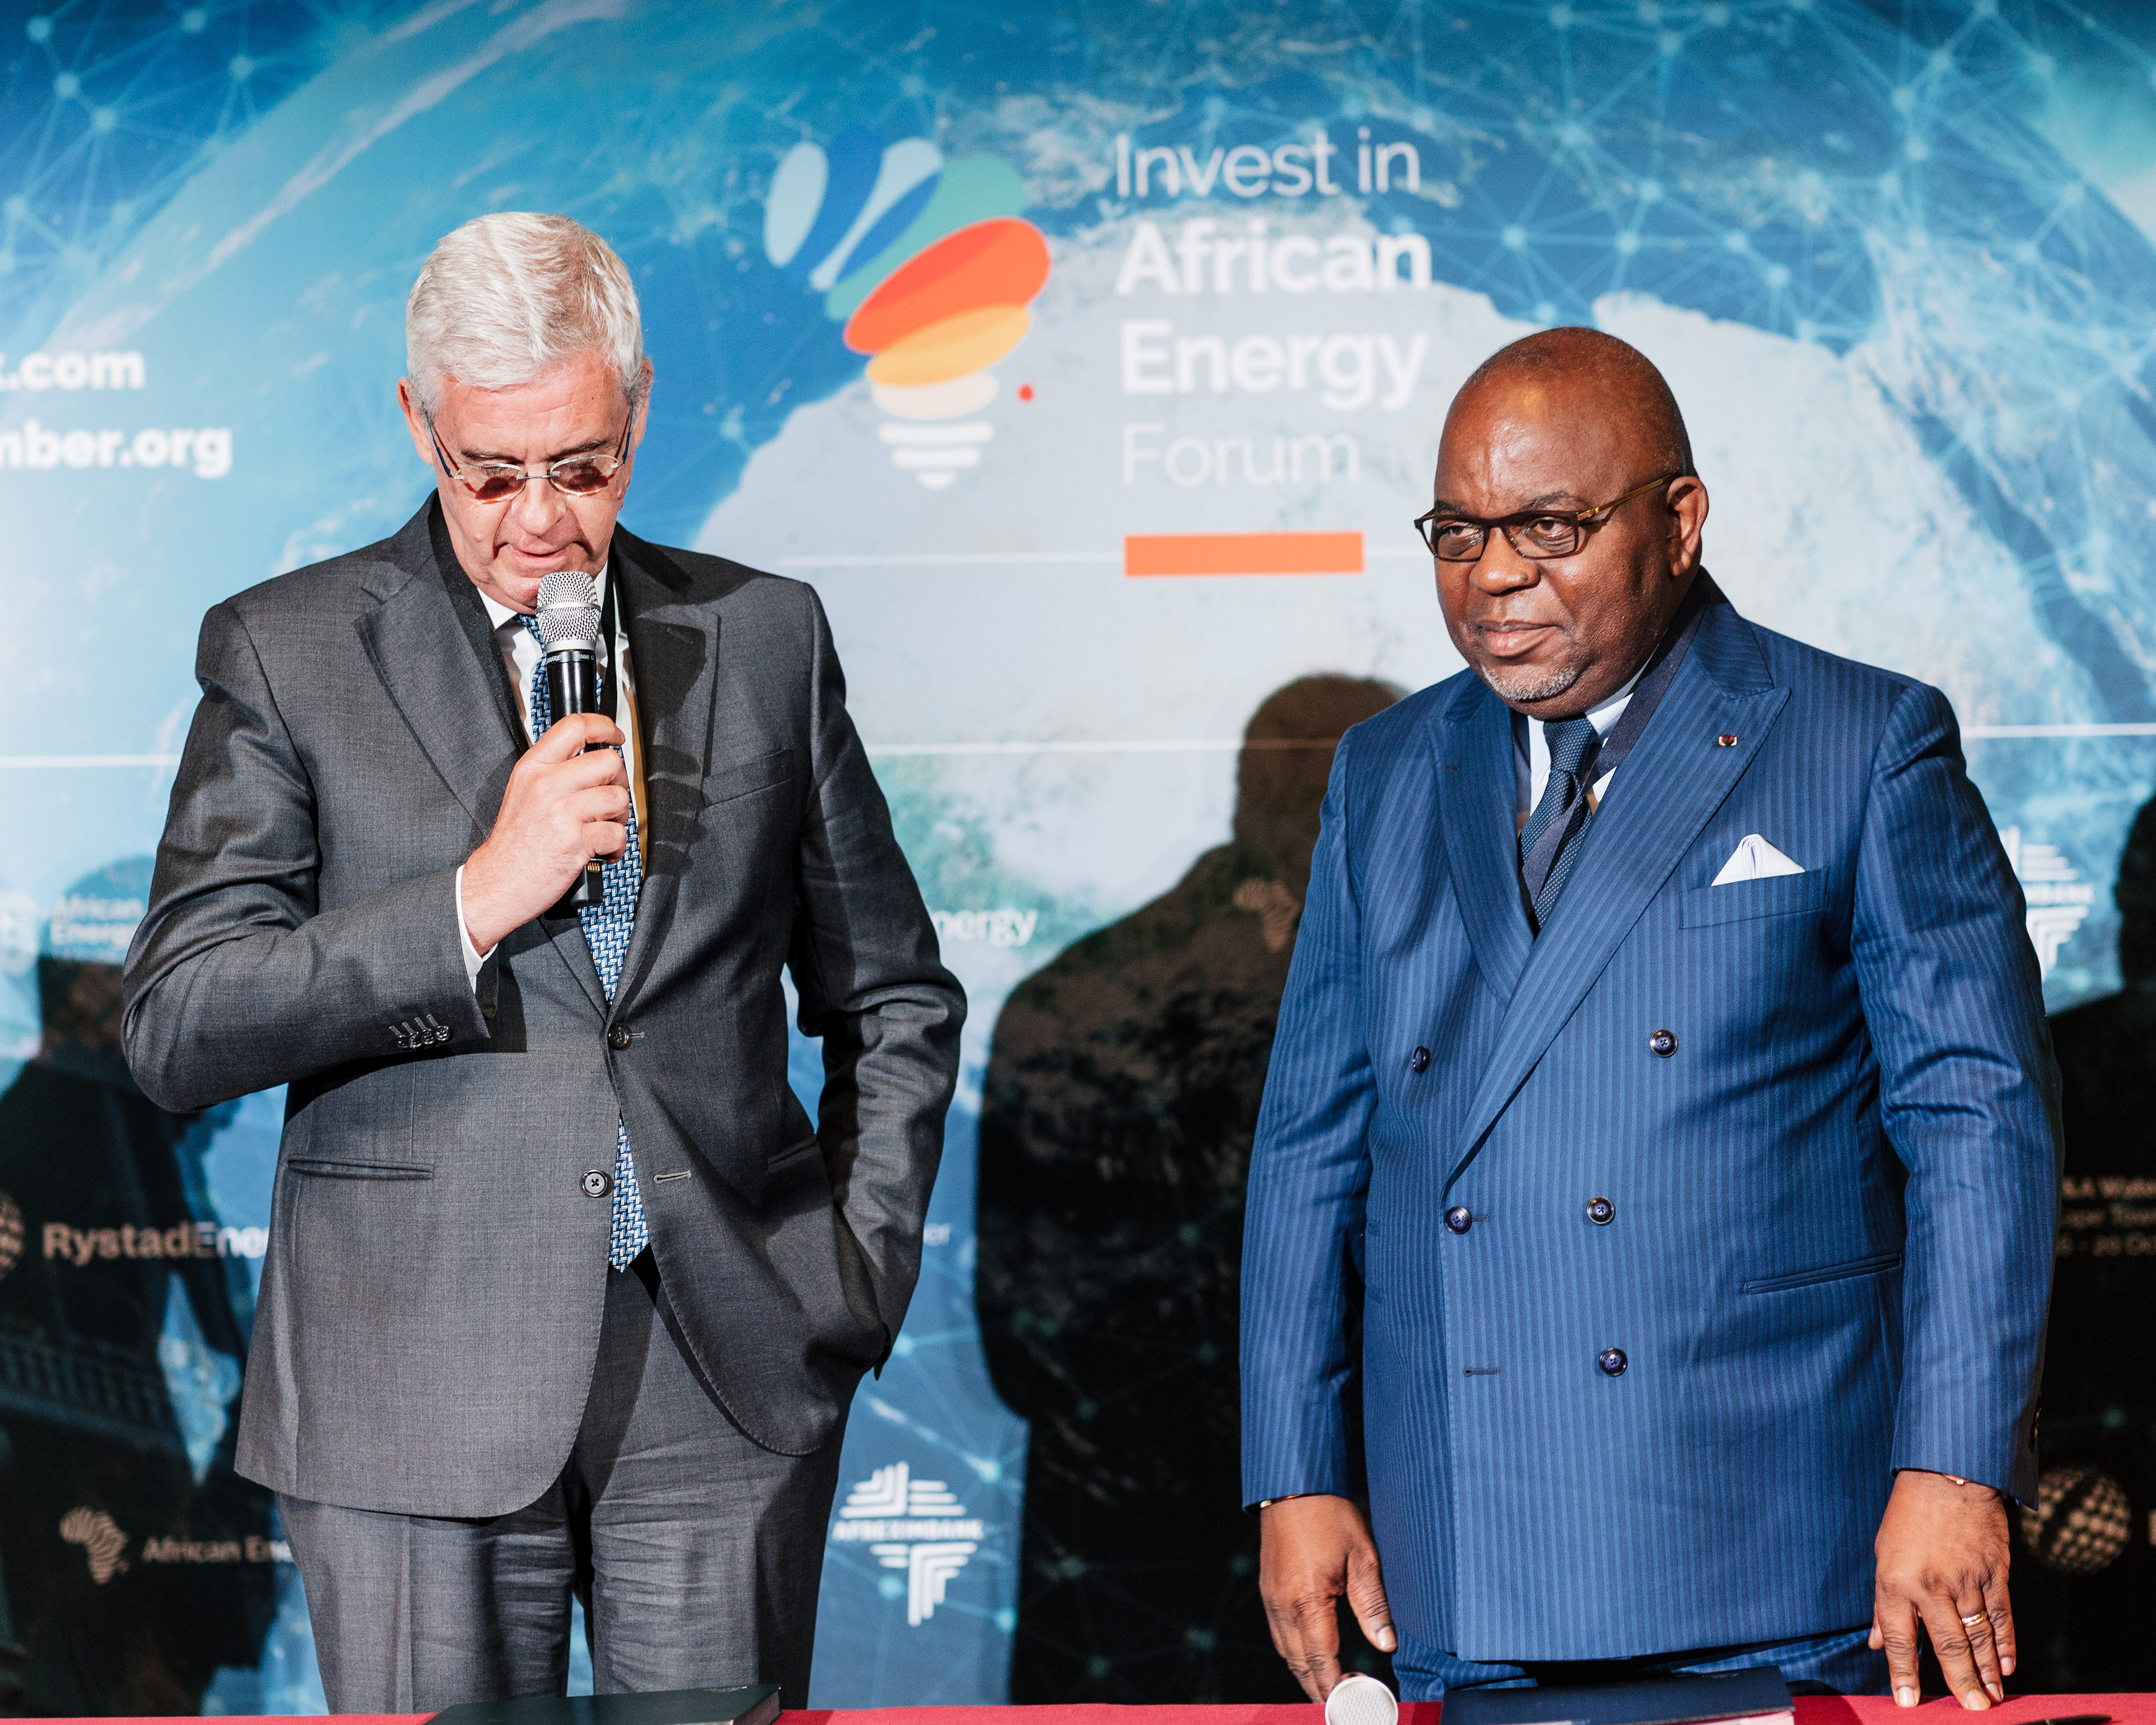 Investissements dans l'énergie : La Chambre africaine de l'énergie (AEC) soutient le forum « Invest in African Energy » à Paris